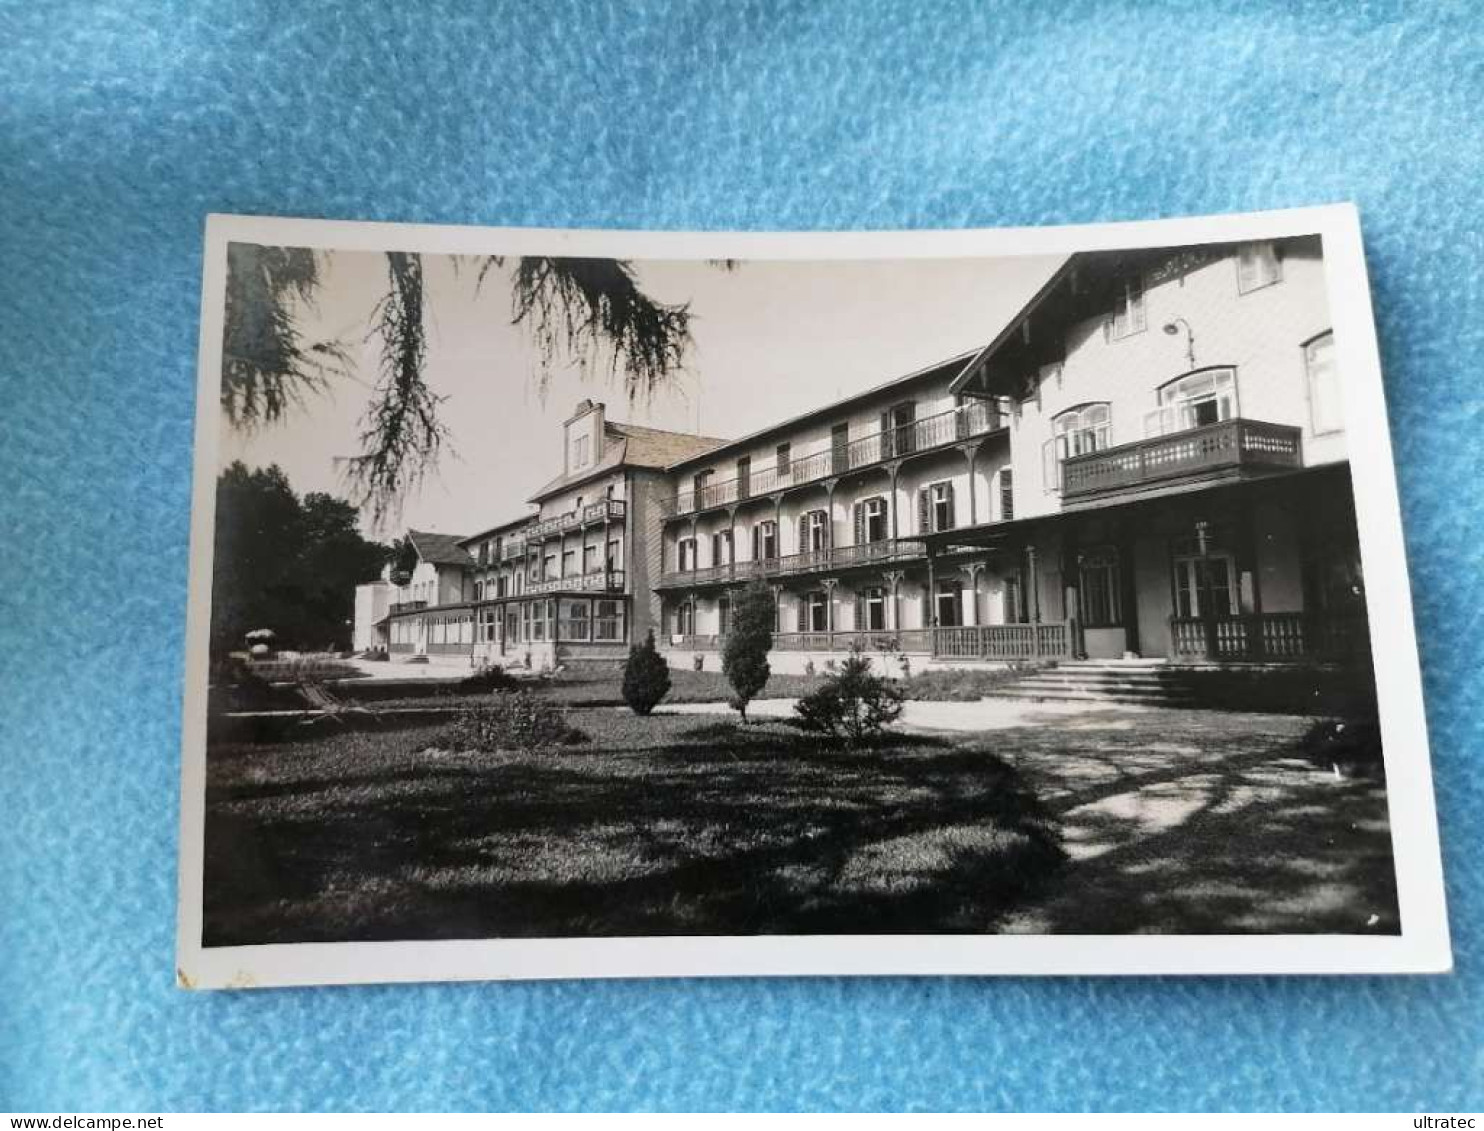 AK "GRAND HOTEL KAMMER AM ATTERSEE 1938" SCHÖNE ALTE POSTKARTE VINTAGE ANTIK ANSICHTSKARTE HEIMAT SAMMLER OÖ - Attersee-Orte